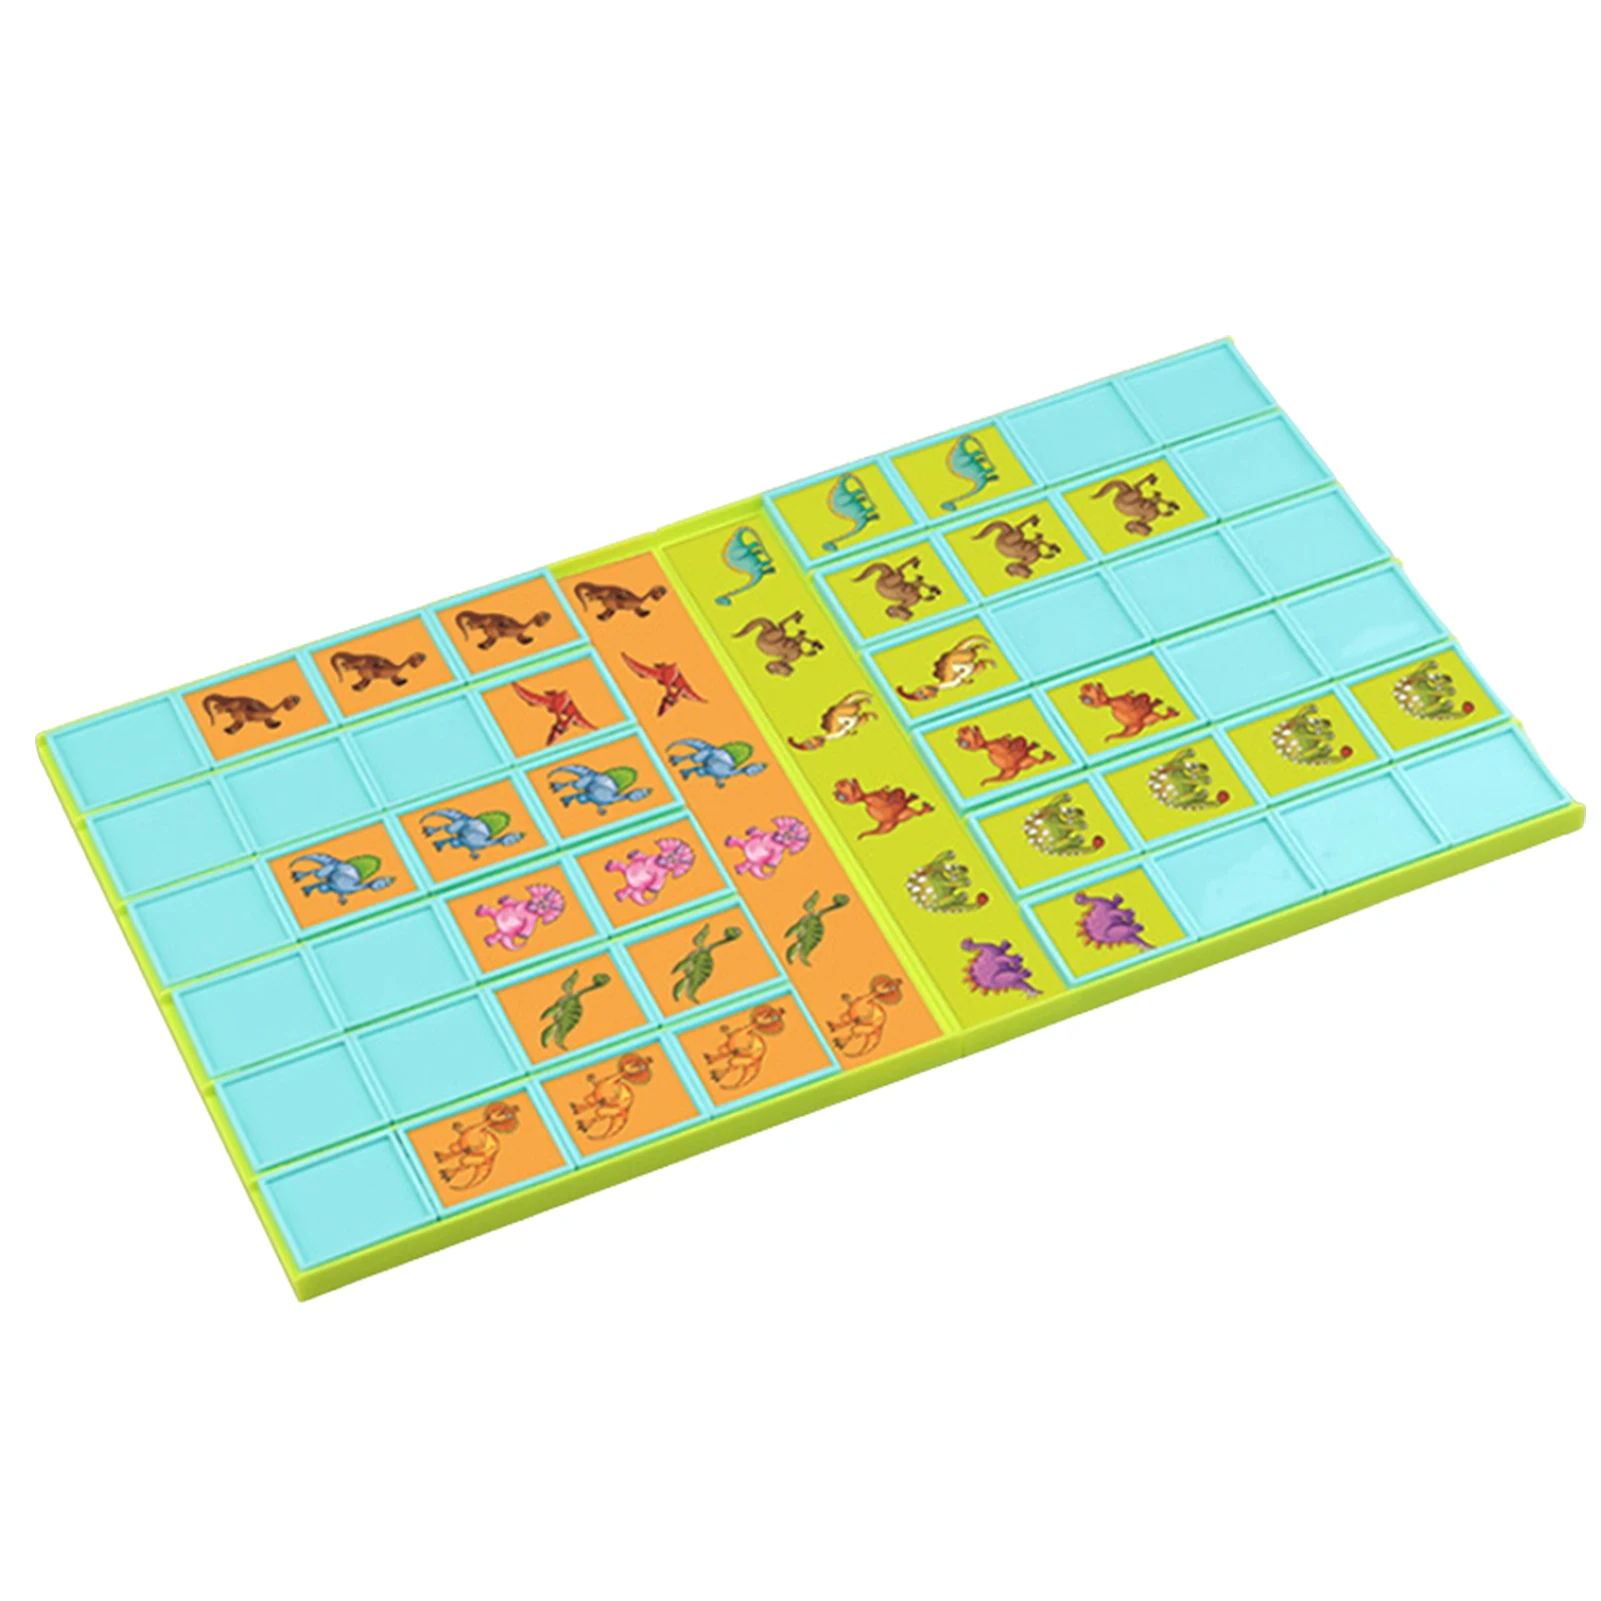 

Настольная игра в виде динозавра, карты для сопоставления животных, игры для сопоставления памяти, развивающая игрушка-головоломка для моз...